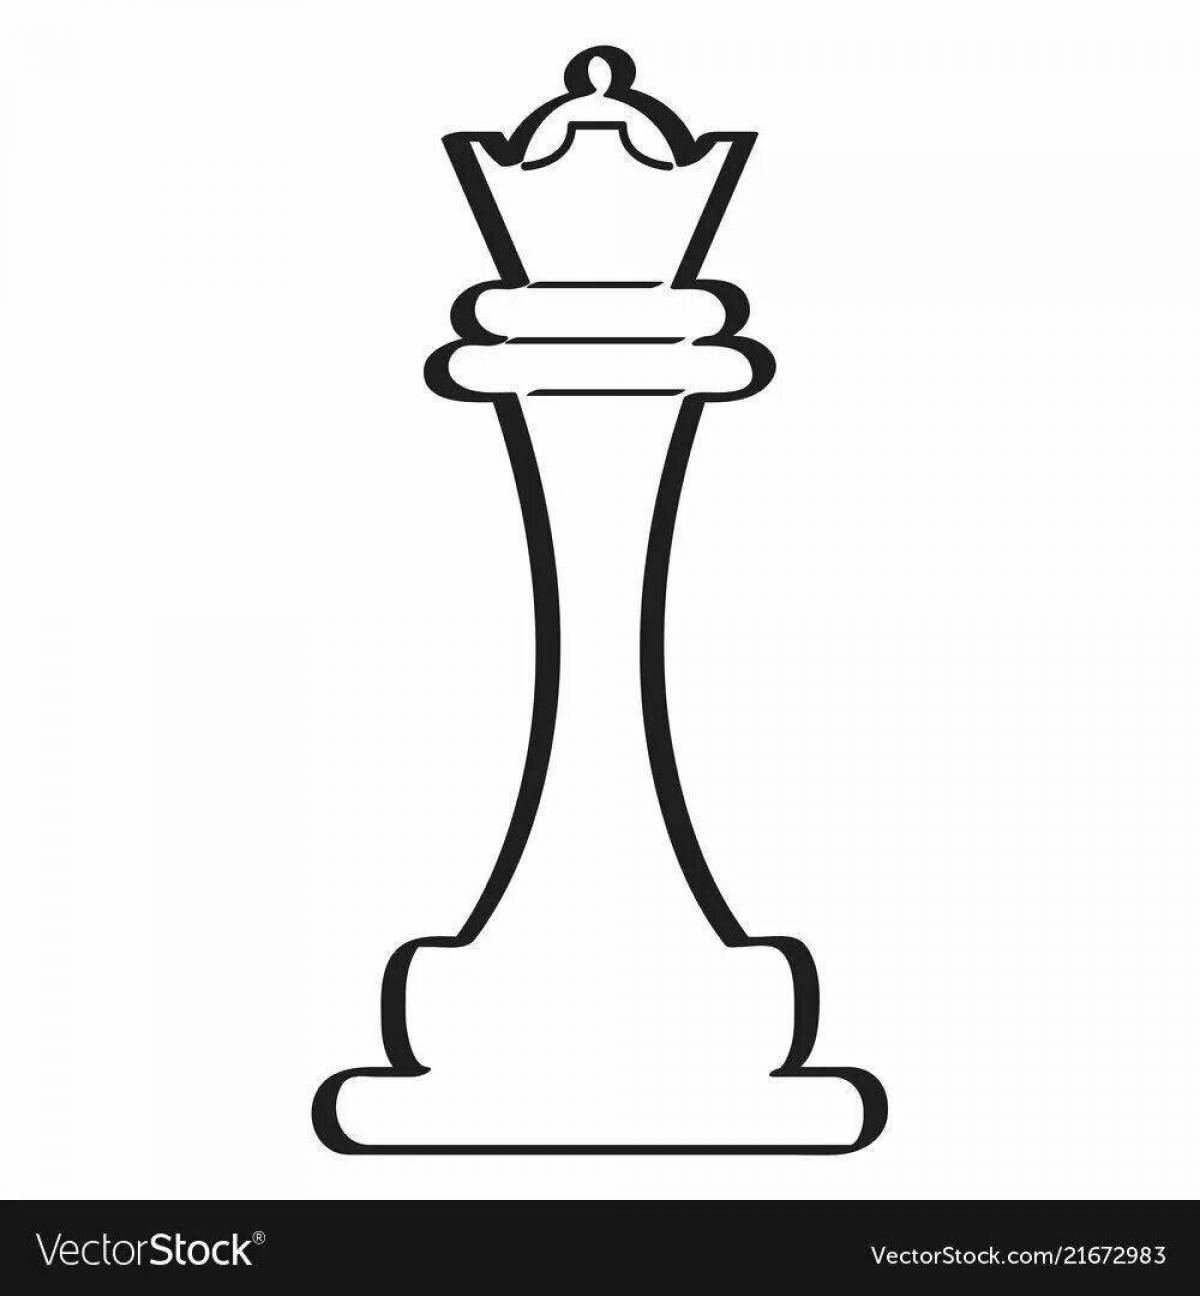 Chess queen #7